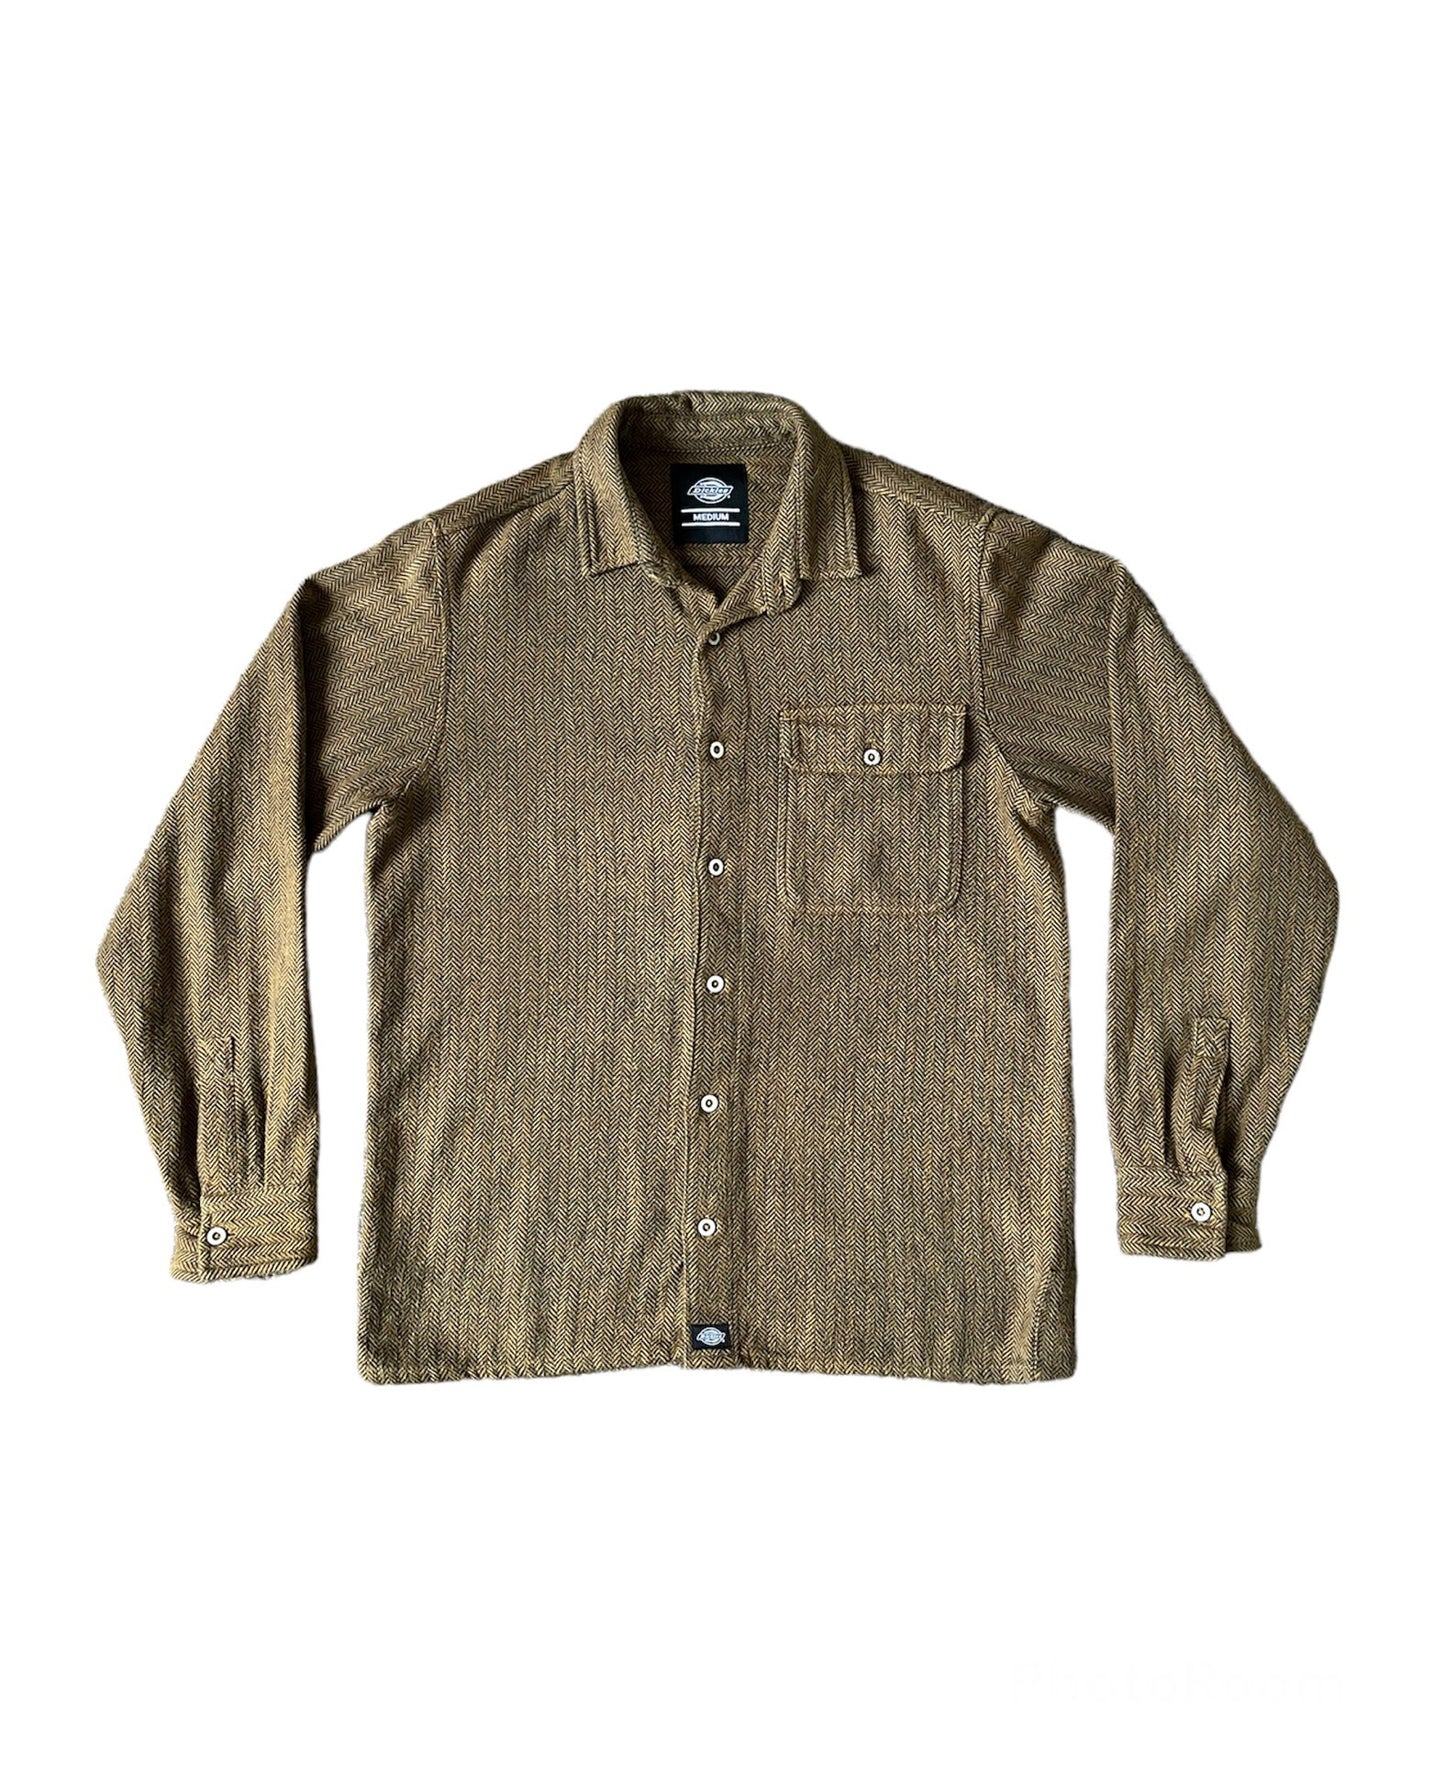 Dickies Textured Shirt Brown - Medium